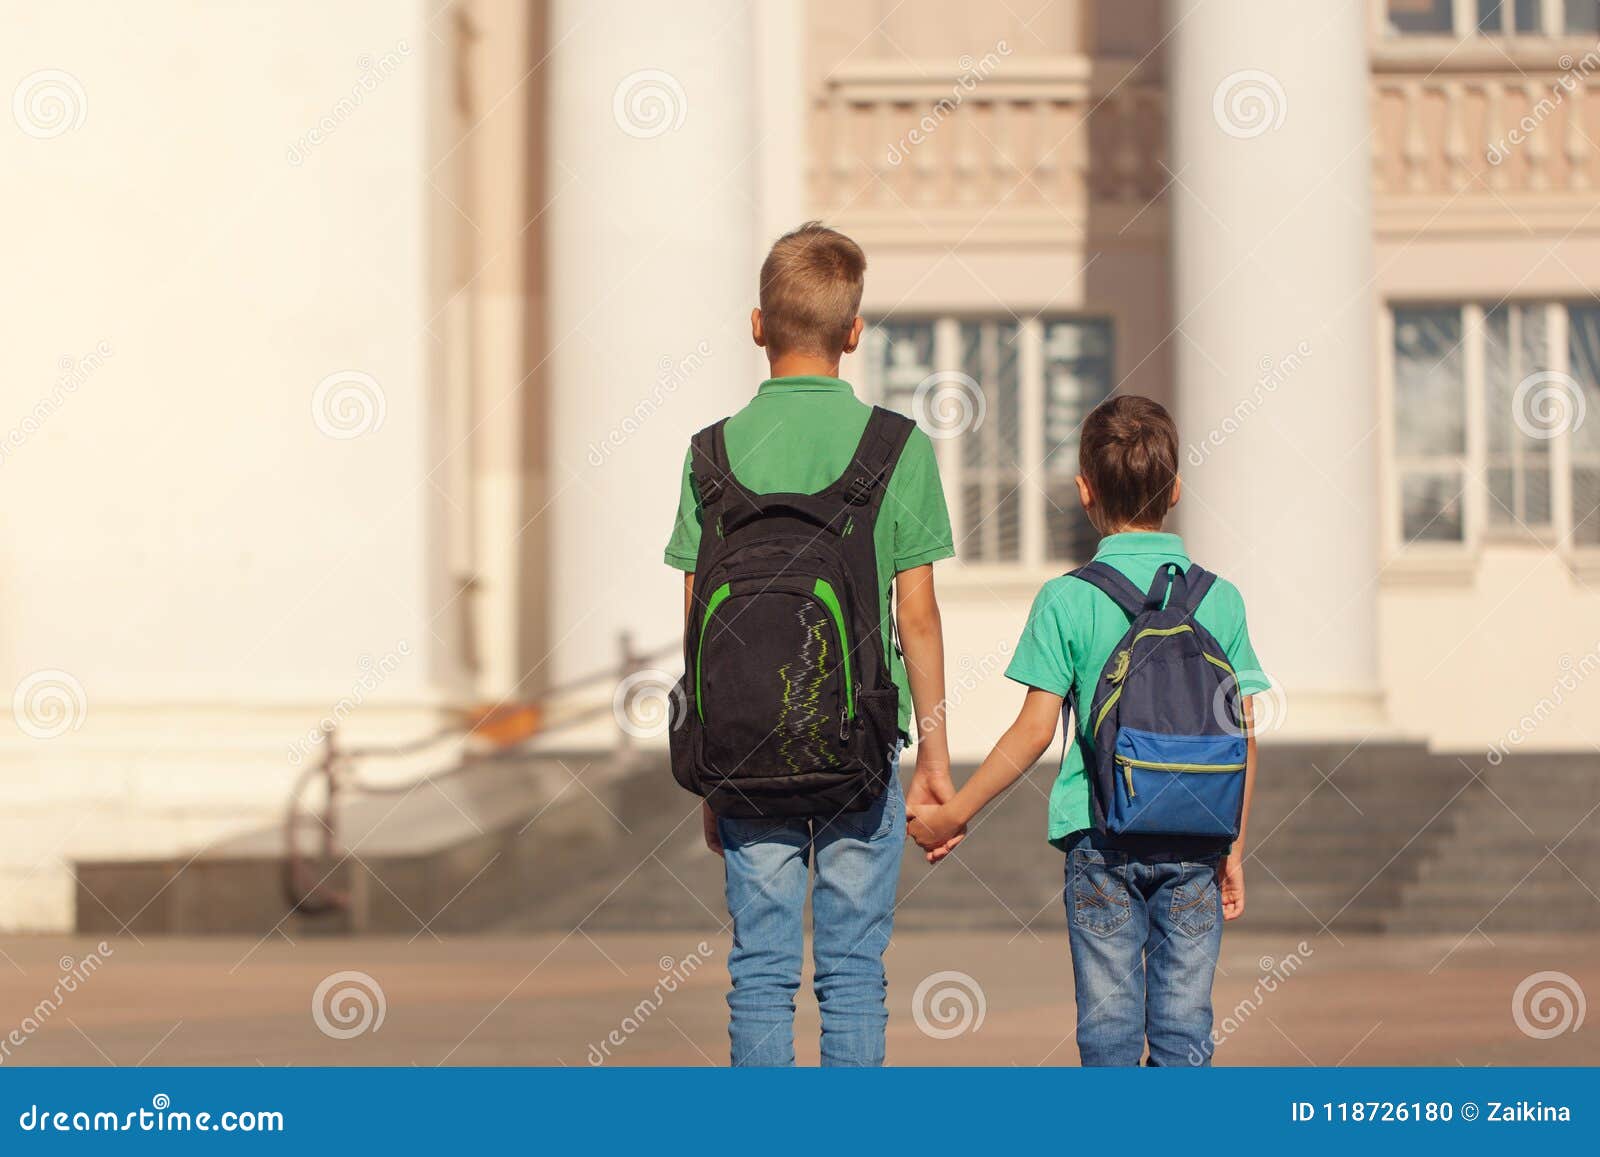 Идем братцы. Мальчишка идёт в школу. Школьник с двумя рюкзаками. Рюкзаки для школы для мальчиков. Мальчик идет в школу.